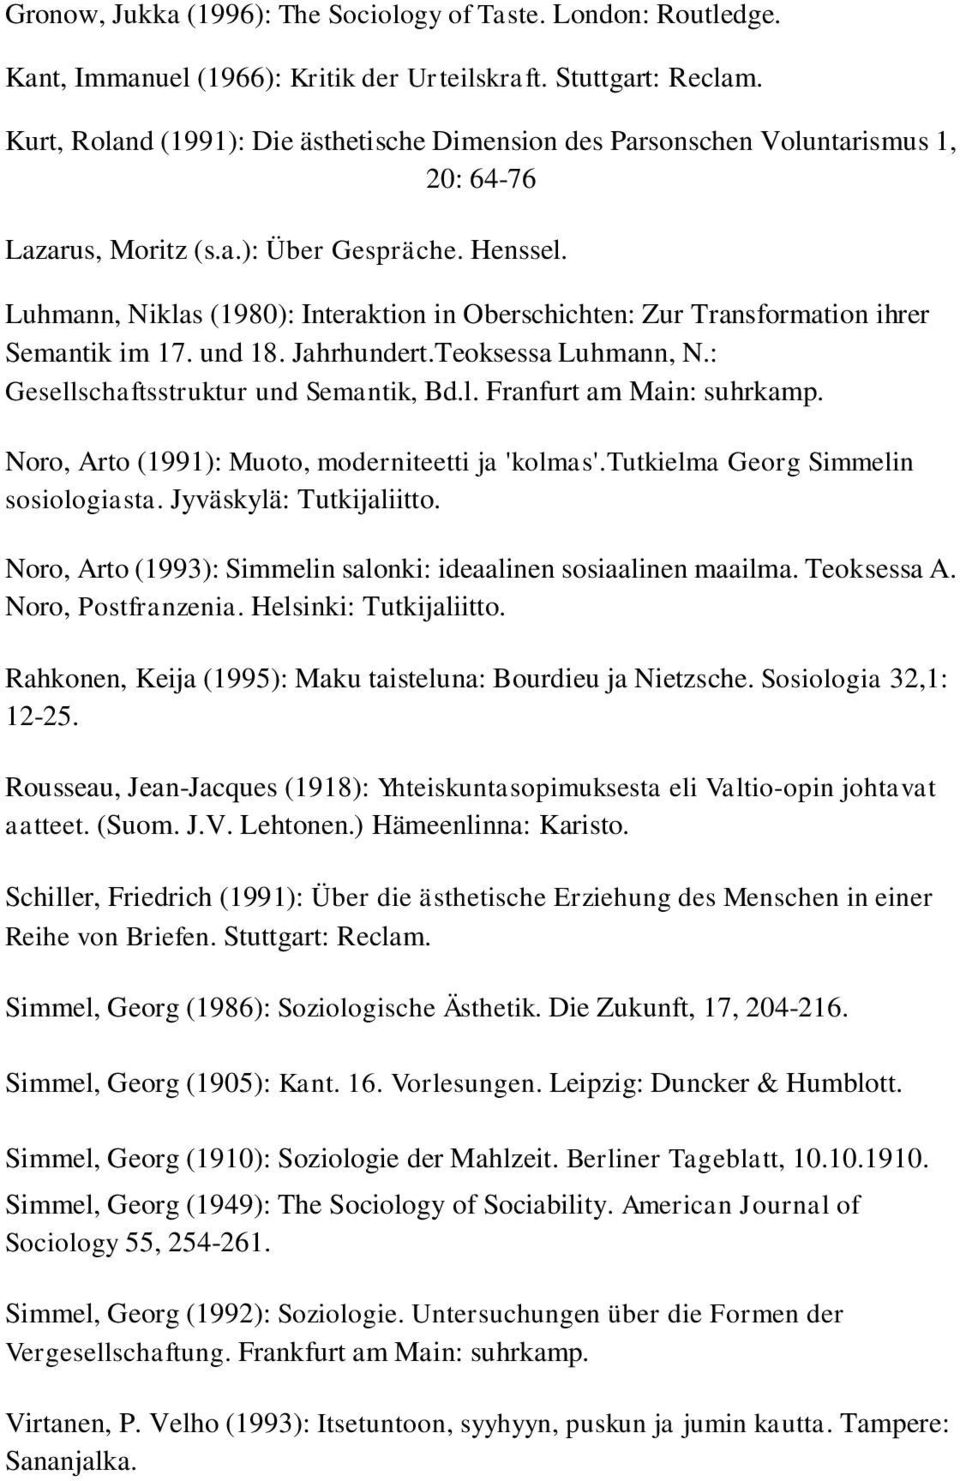 Luhmann, Niklas (1980): Interaktion in Oberschichten: Zur Transformation ihrer Semantik im 17. und 18. Jahrhundert.Teoksessa Luhmann, N.: Gesellschaftsstruktur und Semantik, Bd.l. Franfurt am Main: suhrkamp.